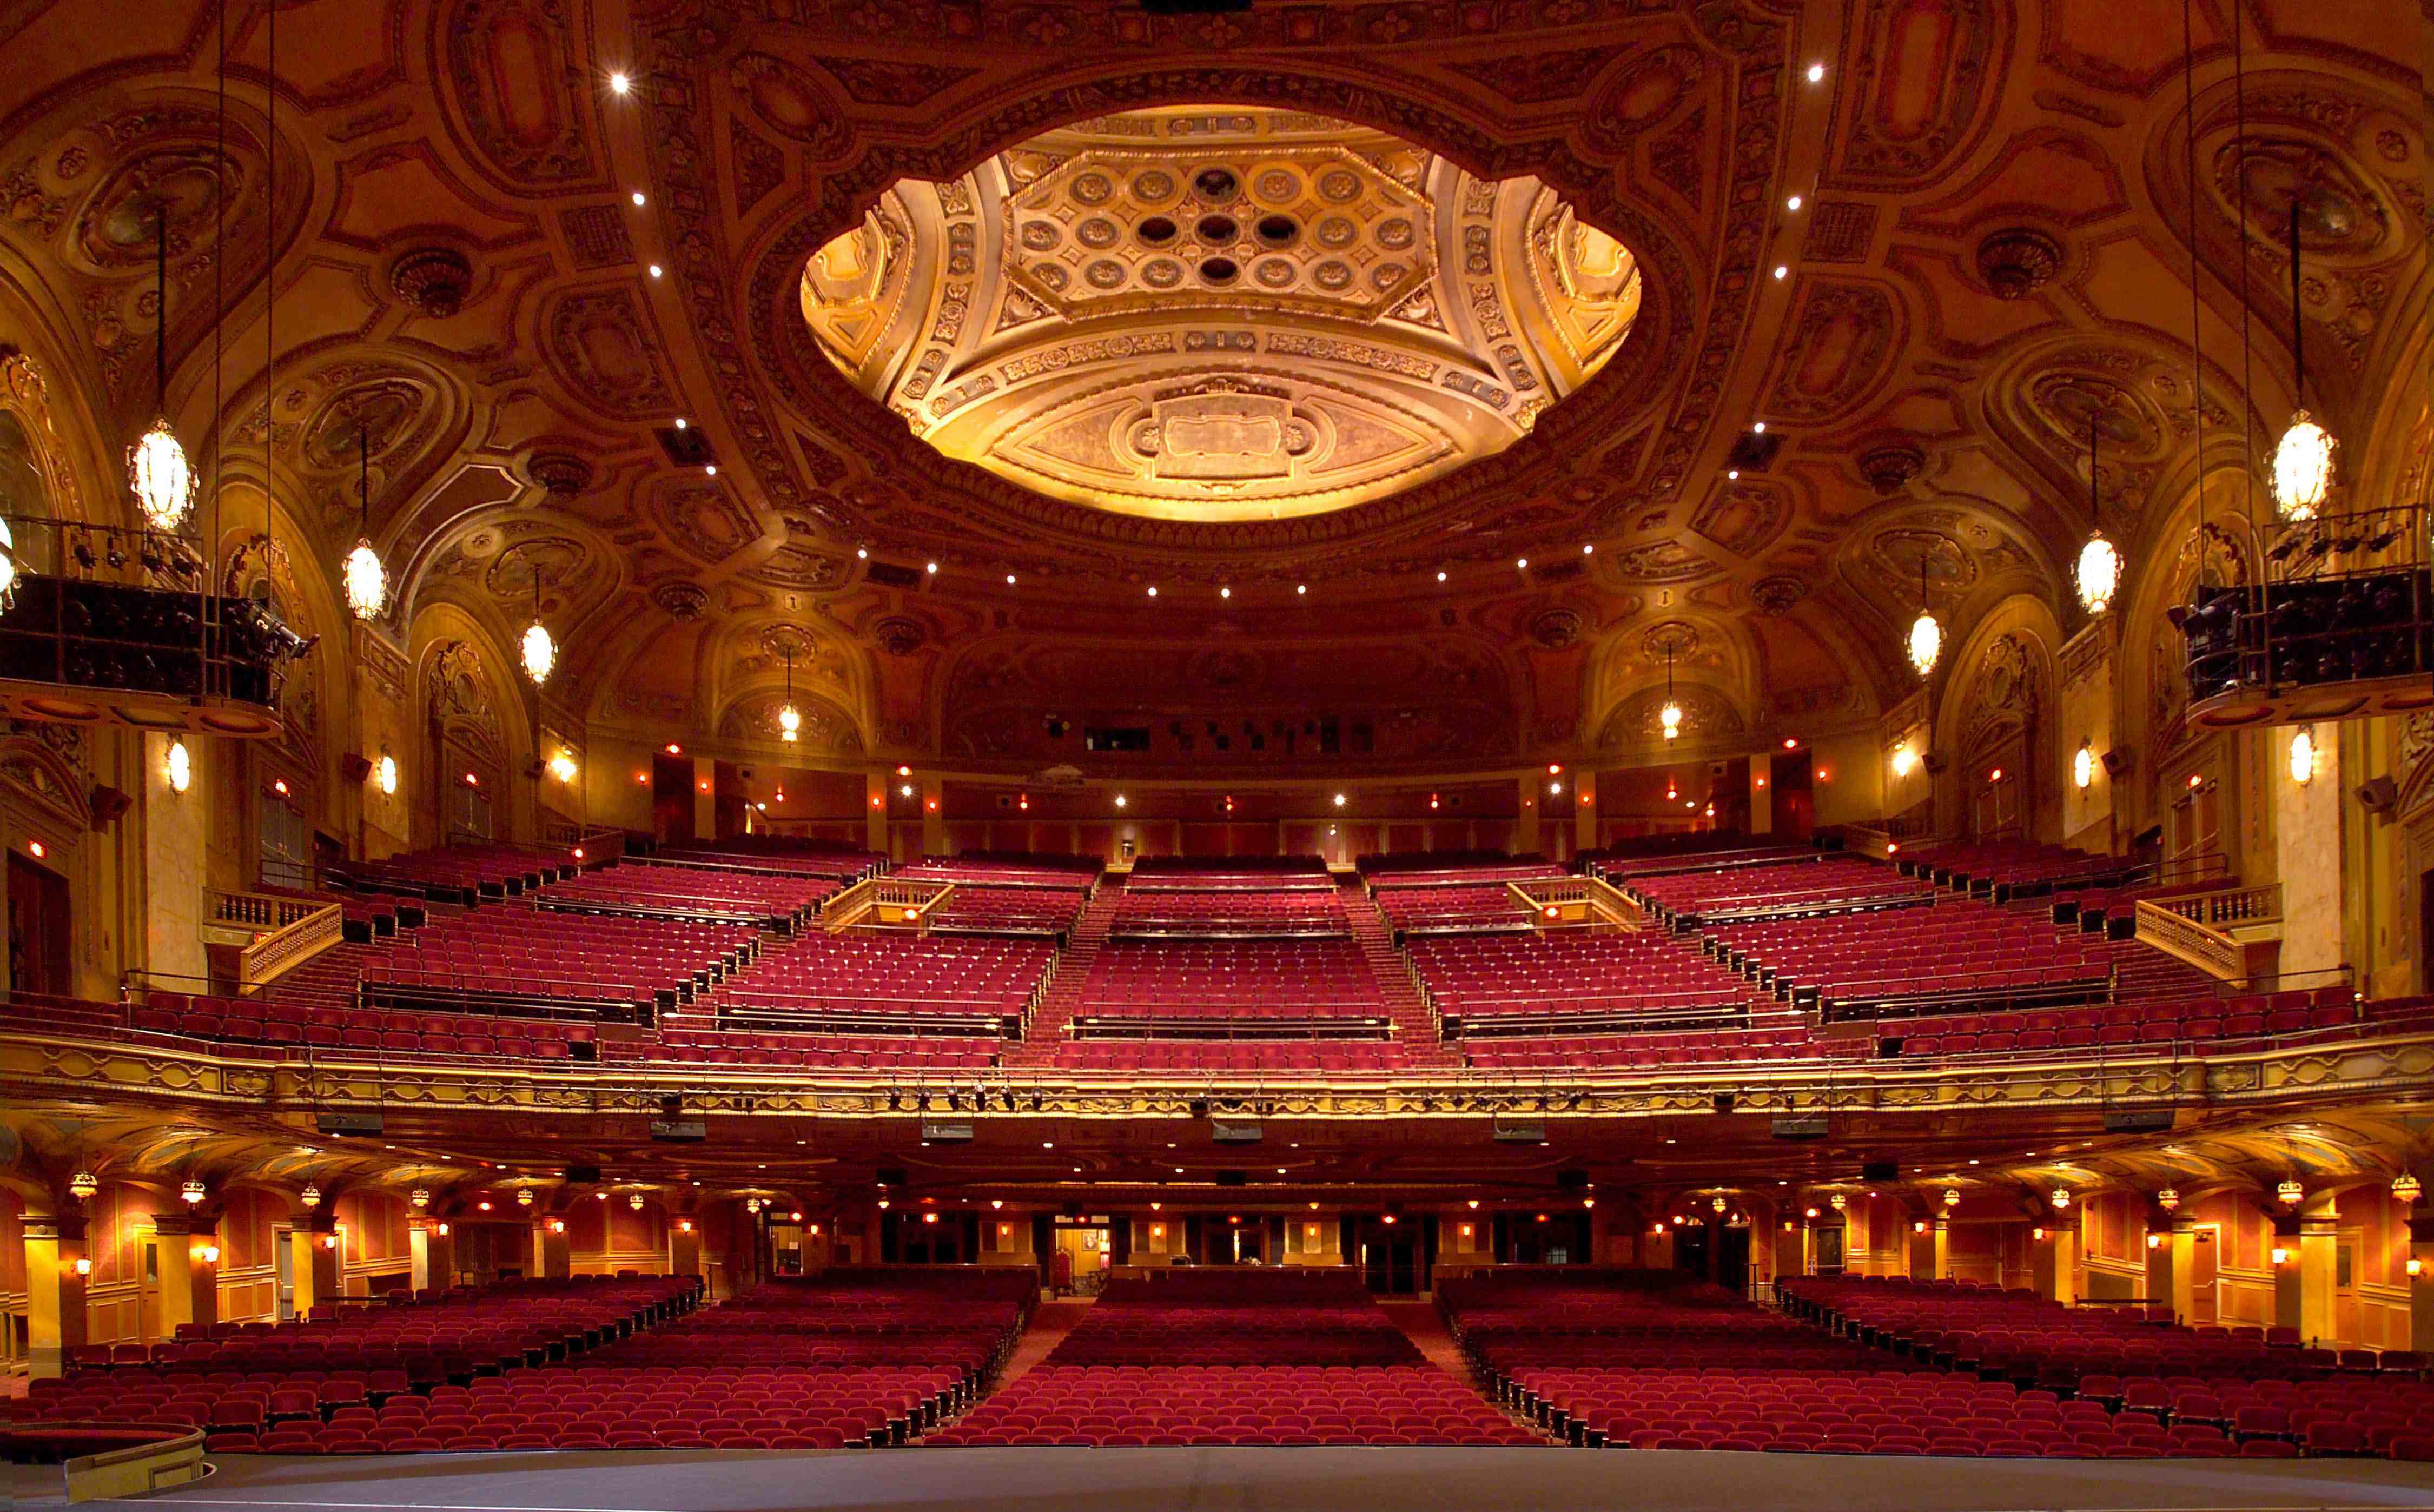 Rochester Auditorium Theatre Seating Capacity Best Seat 2018.